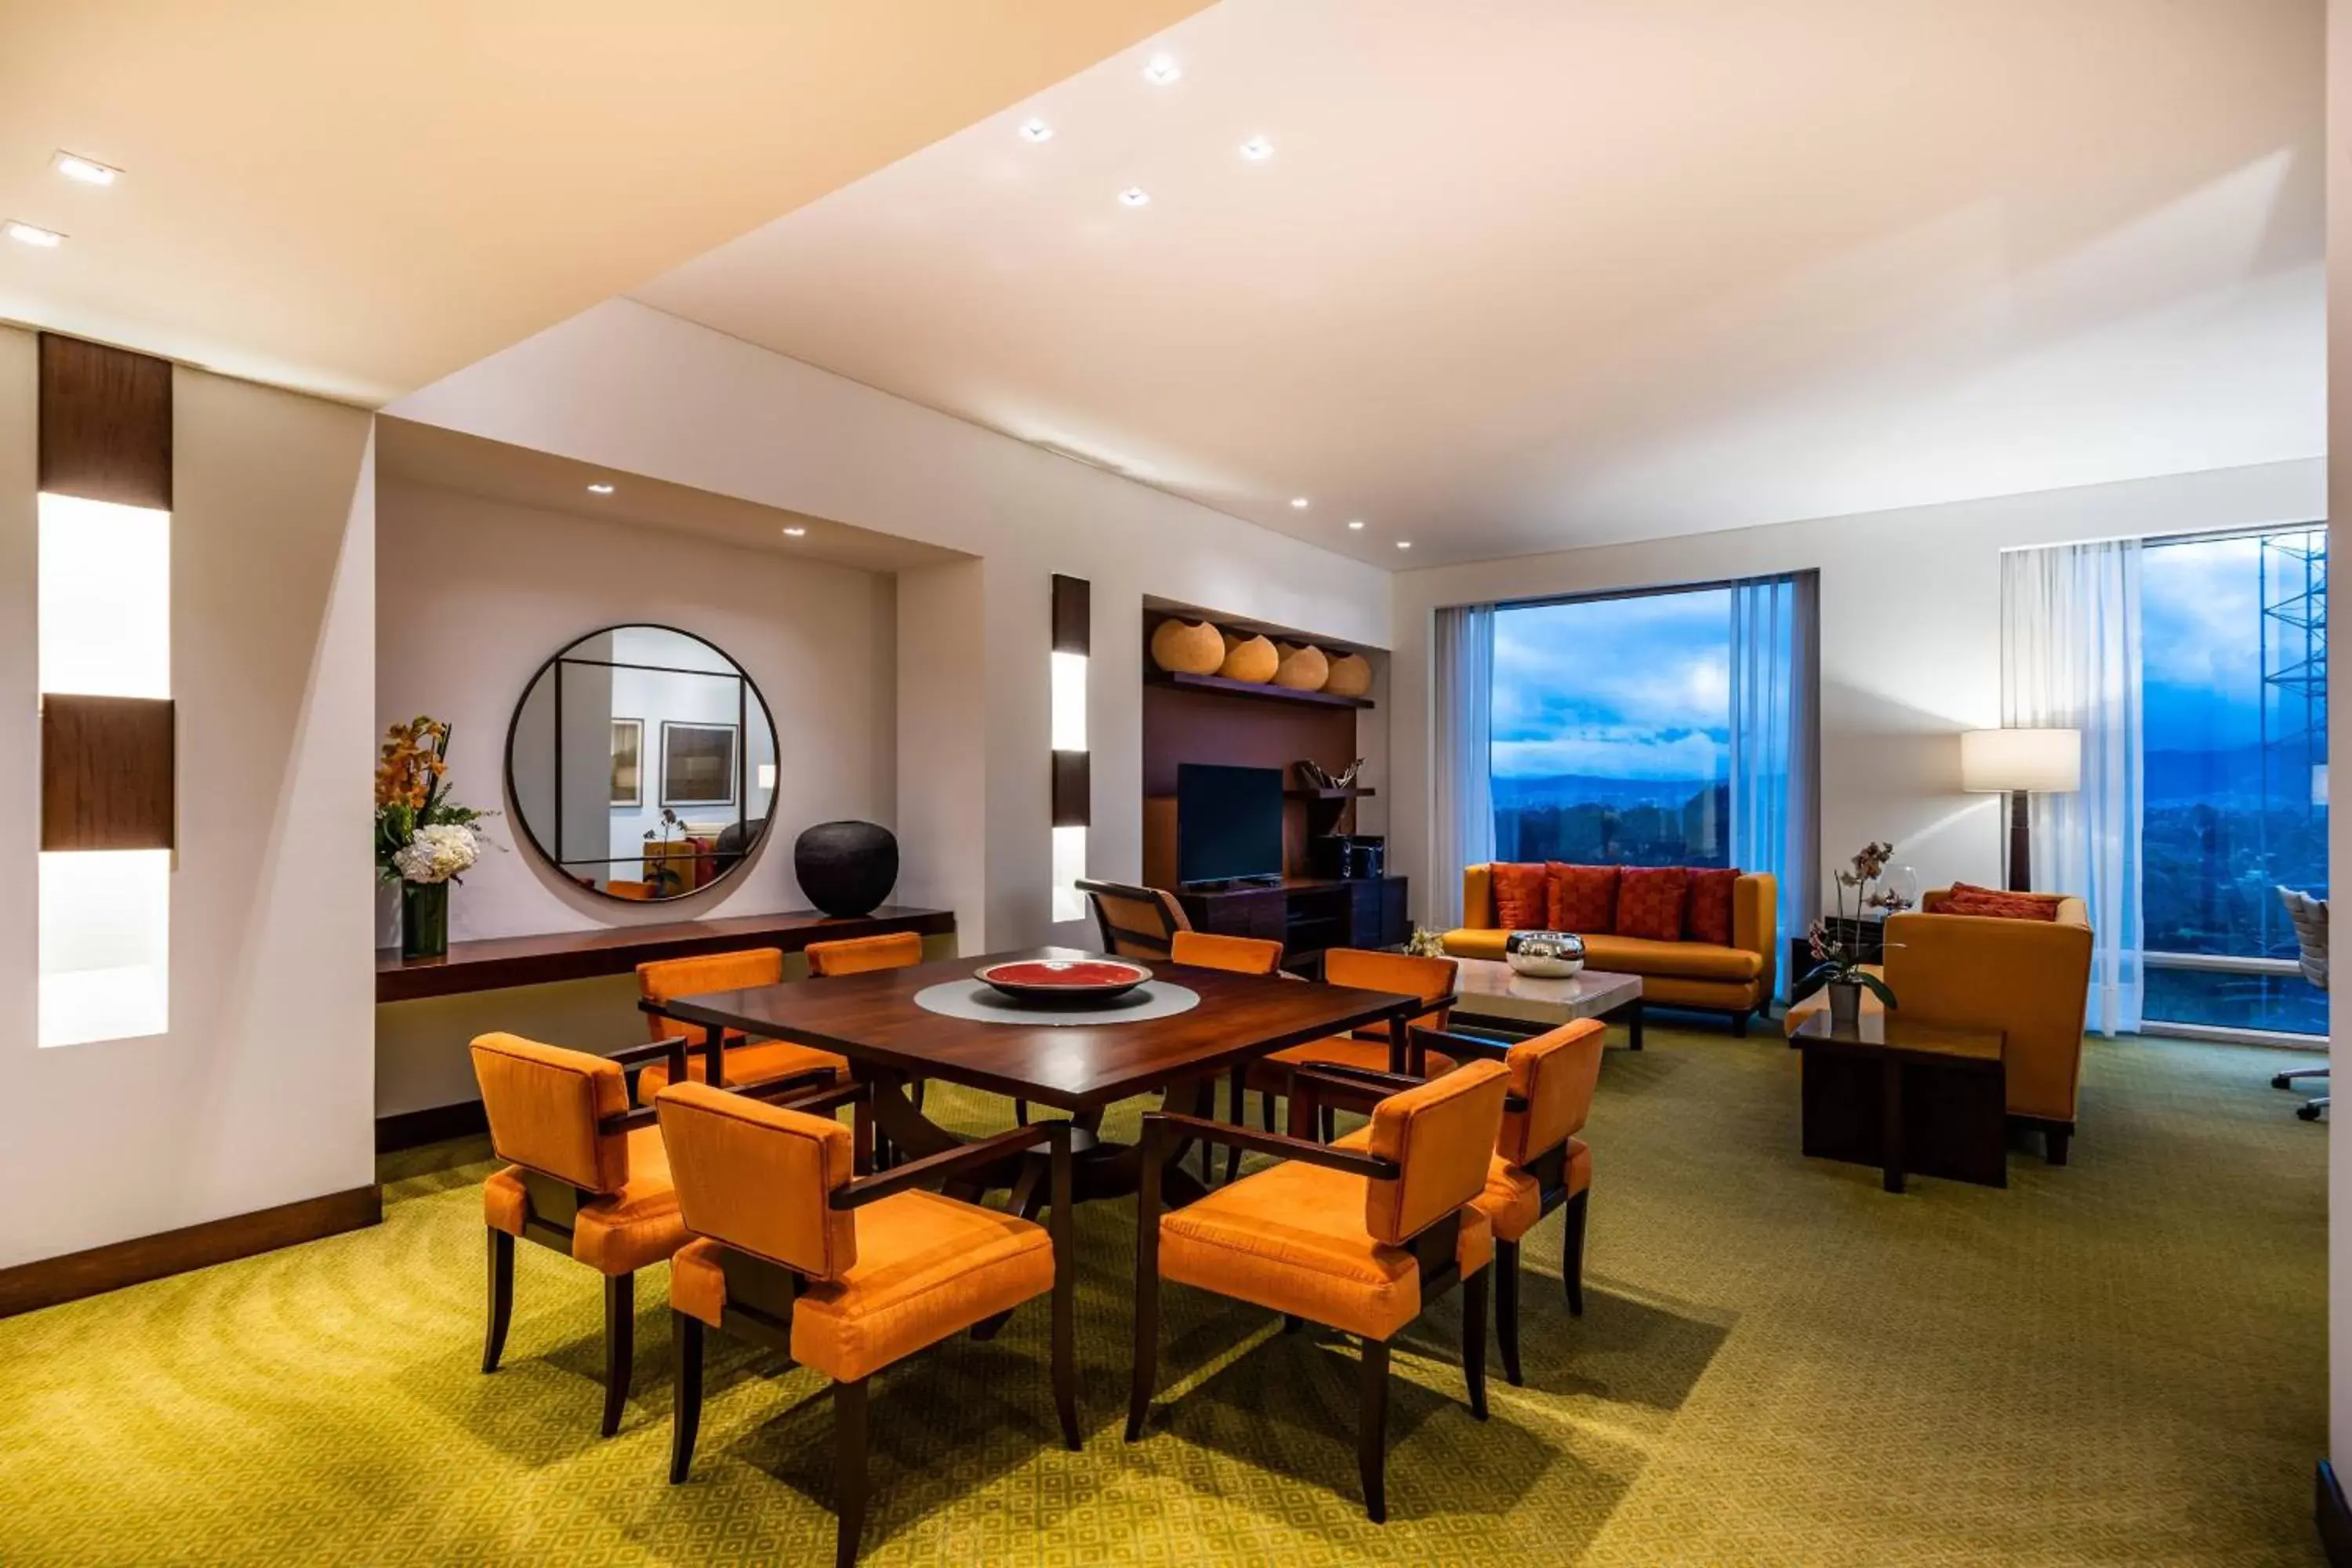 Living room, Dining Area in Bogotá Marriott Hotel